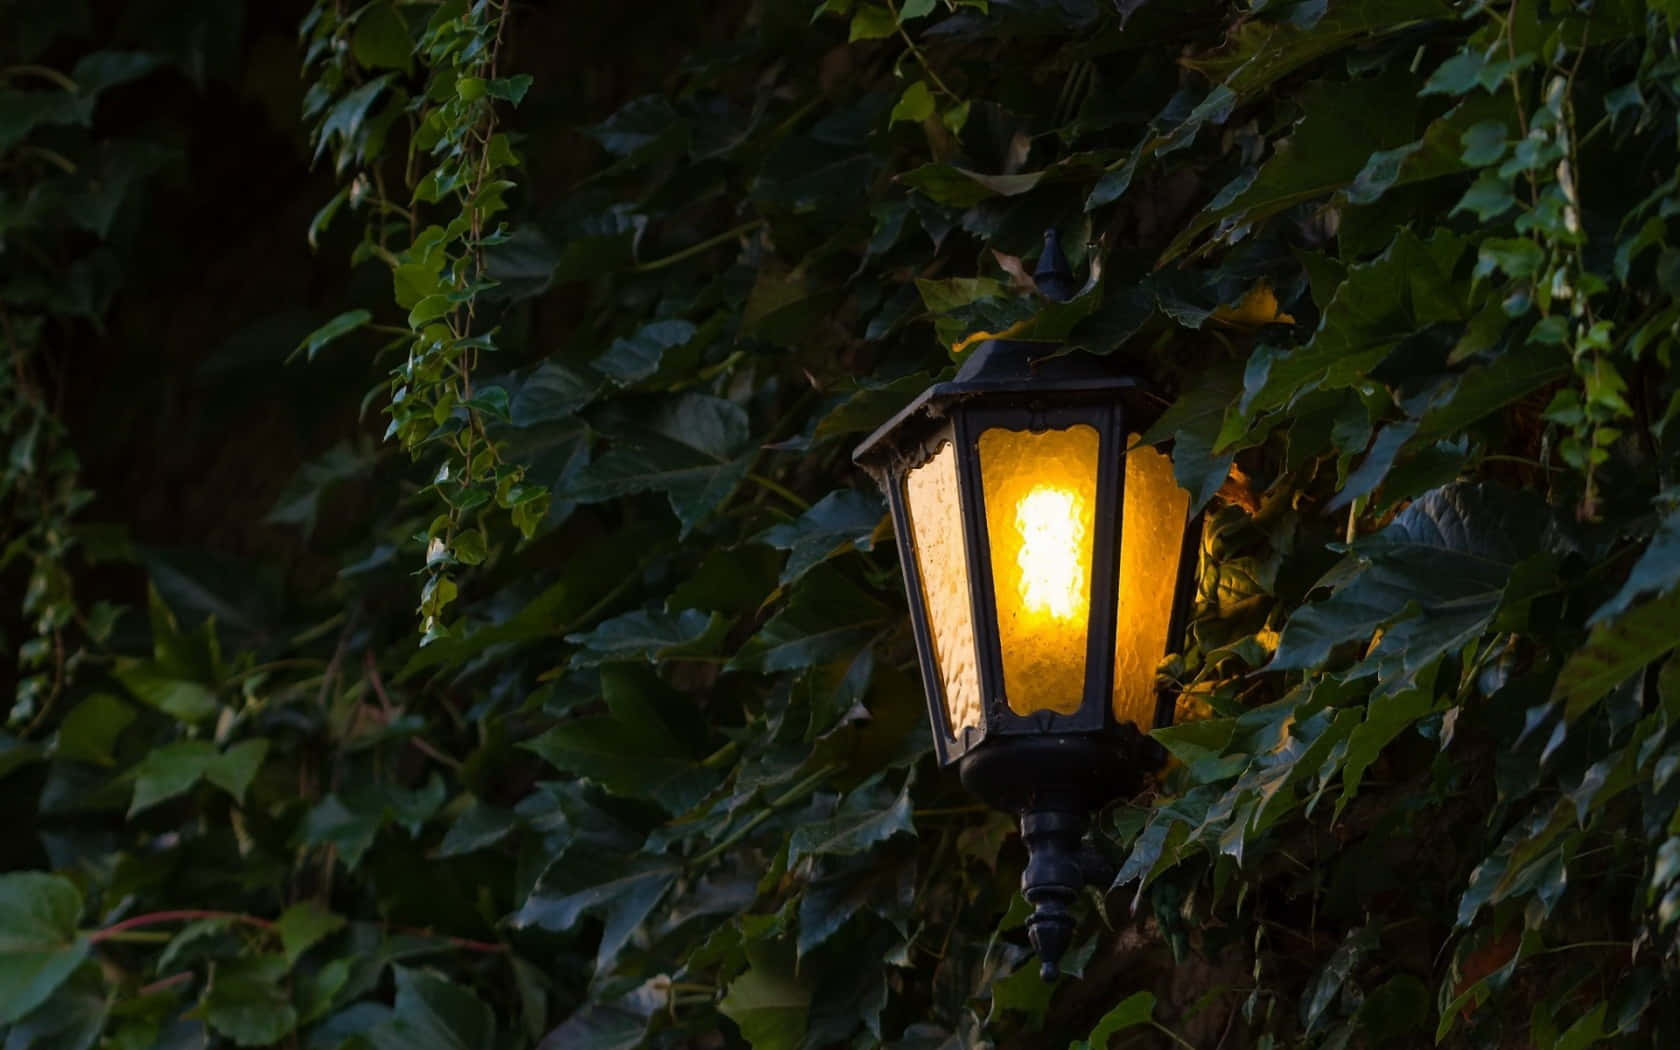 Illuminated Garden Lamp Amongst Leaves.jpg Wallpaper